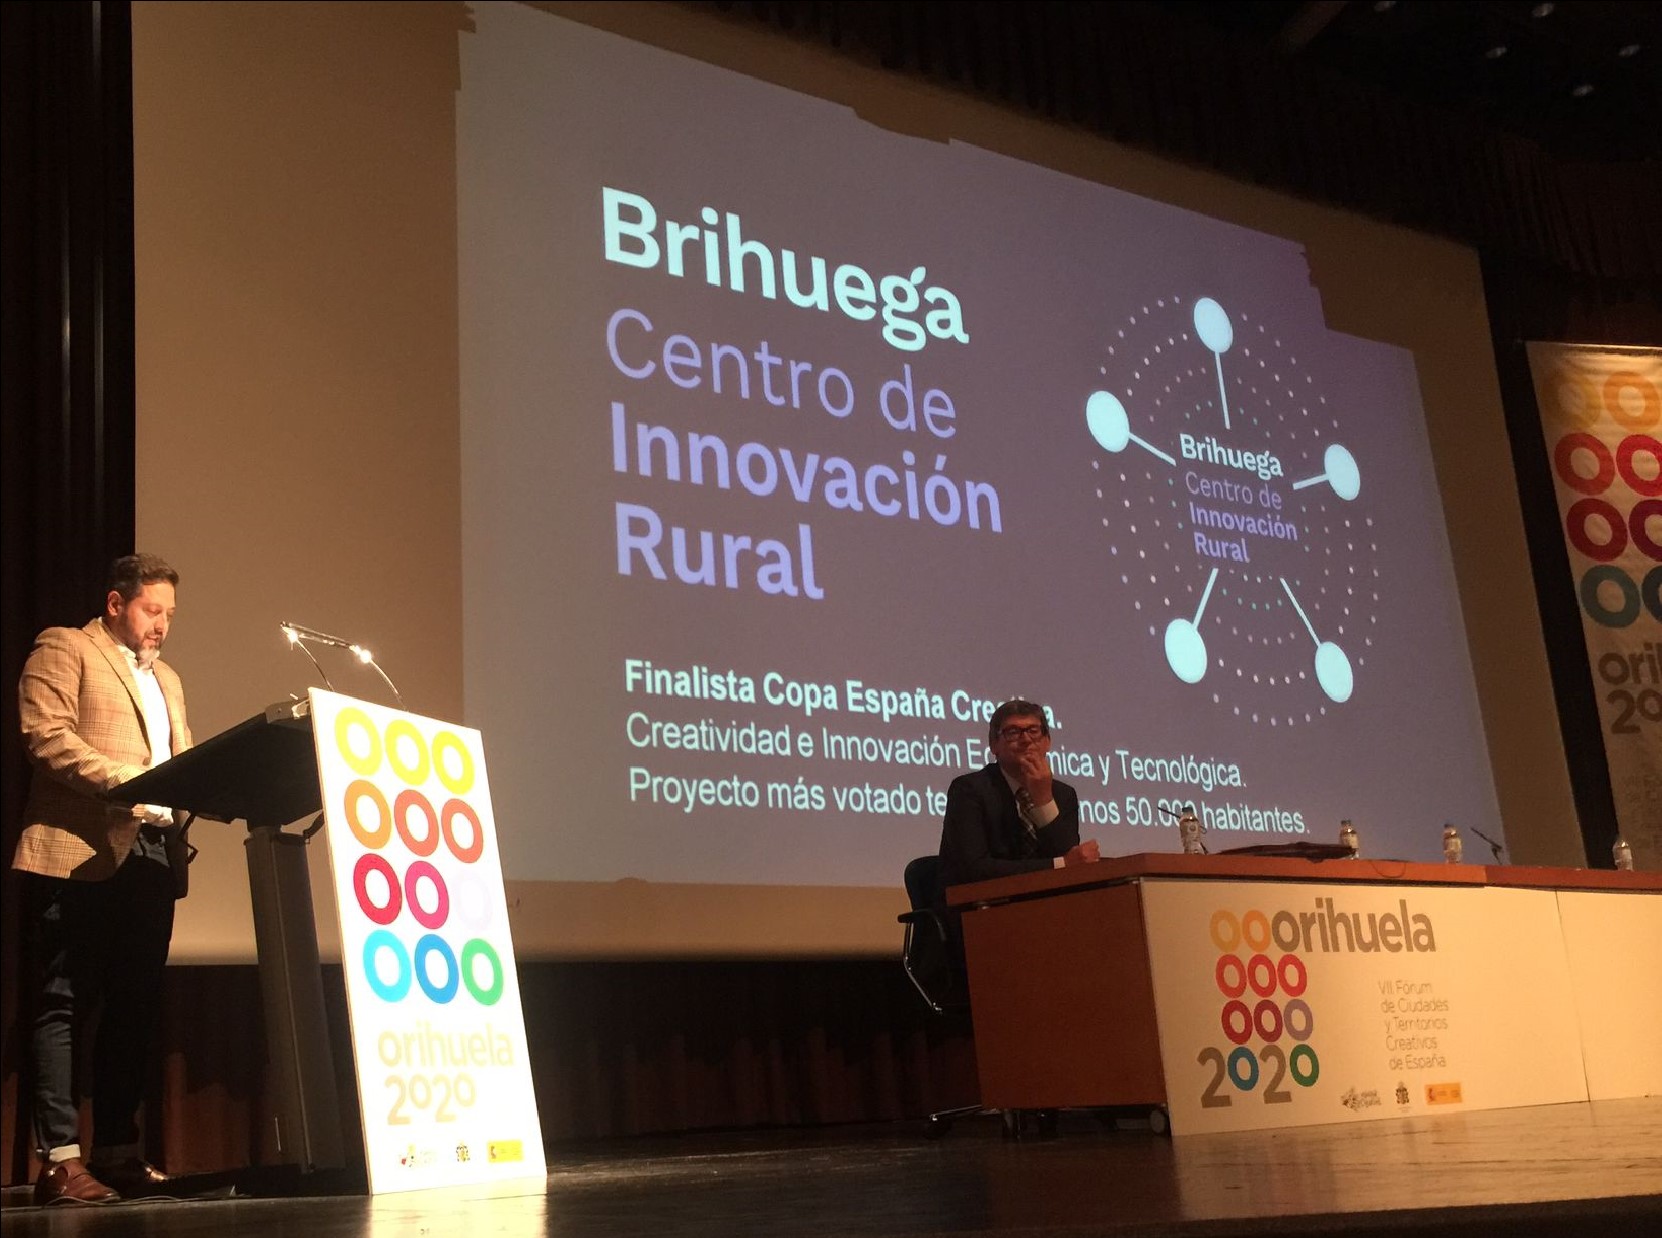 Centro de innovación rural: una solución para acercar los procesos de innovación y las dinámicas de transformación creativa a pequeños municipios.